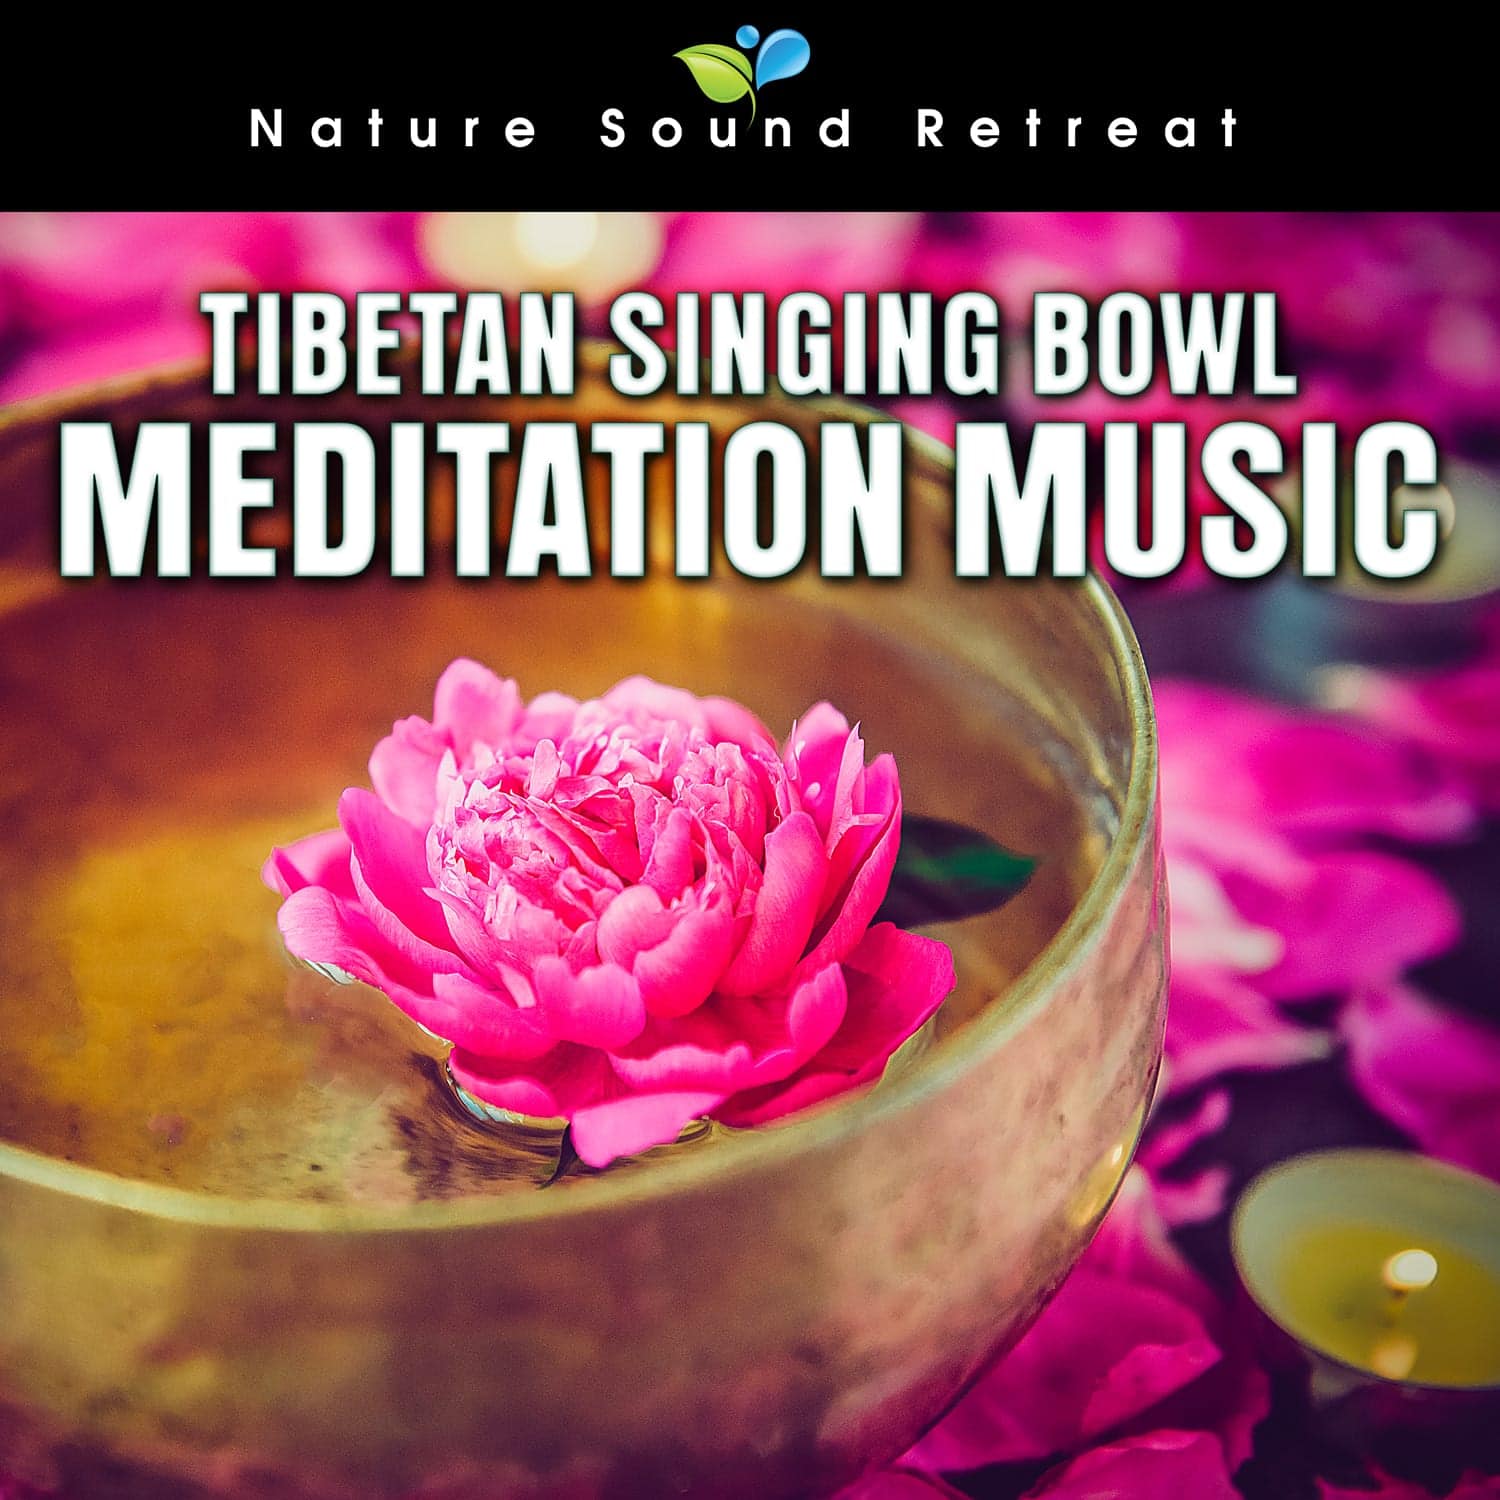 Tibetan Singing Bowl Meditation Music